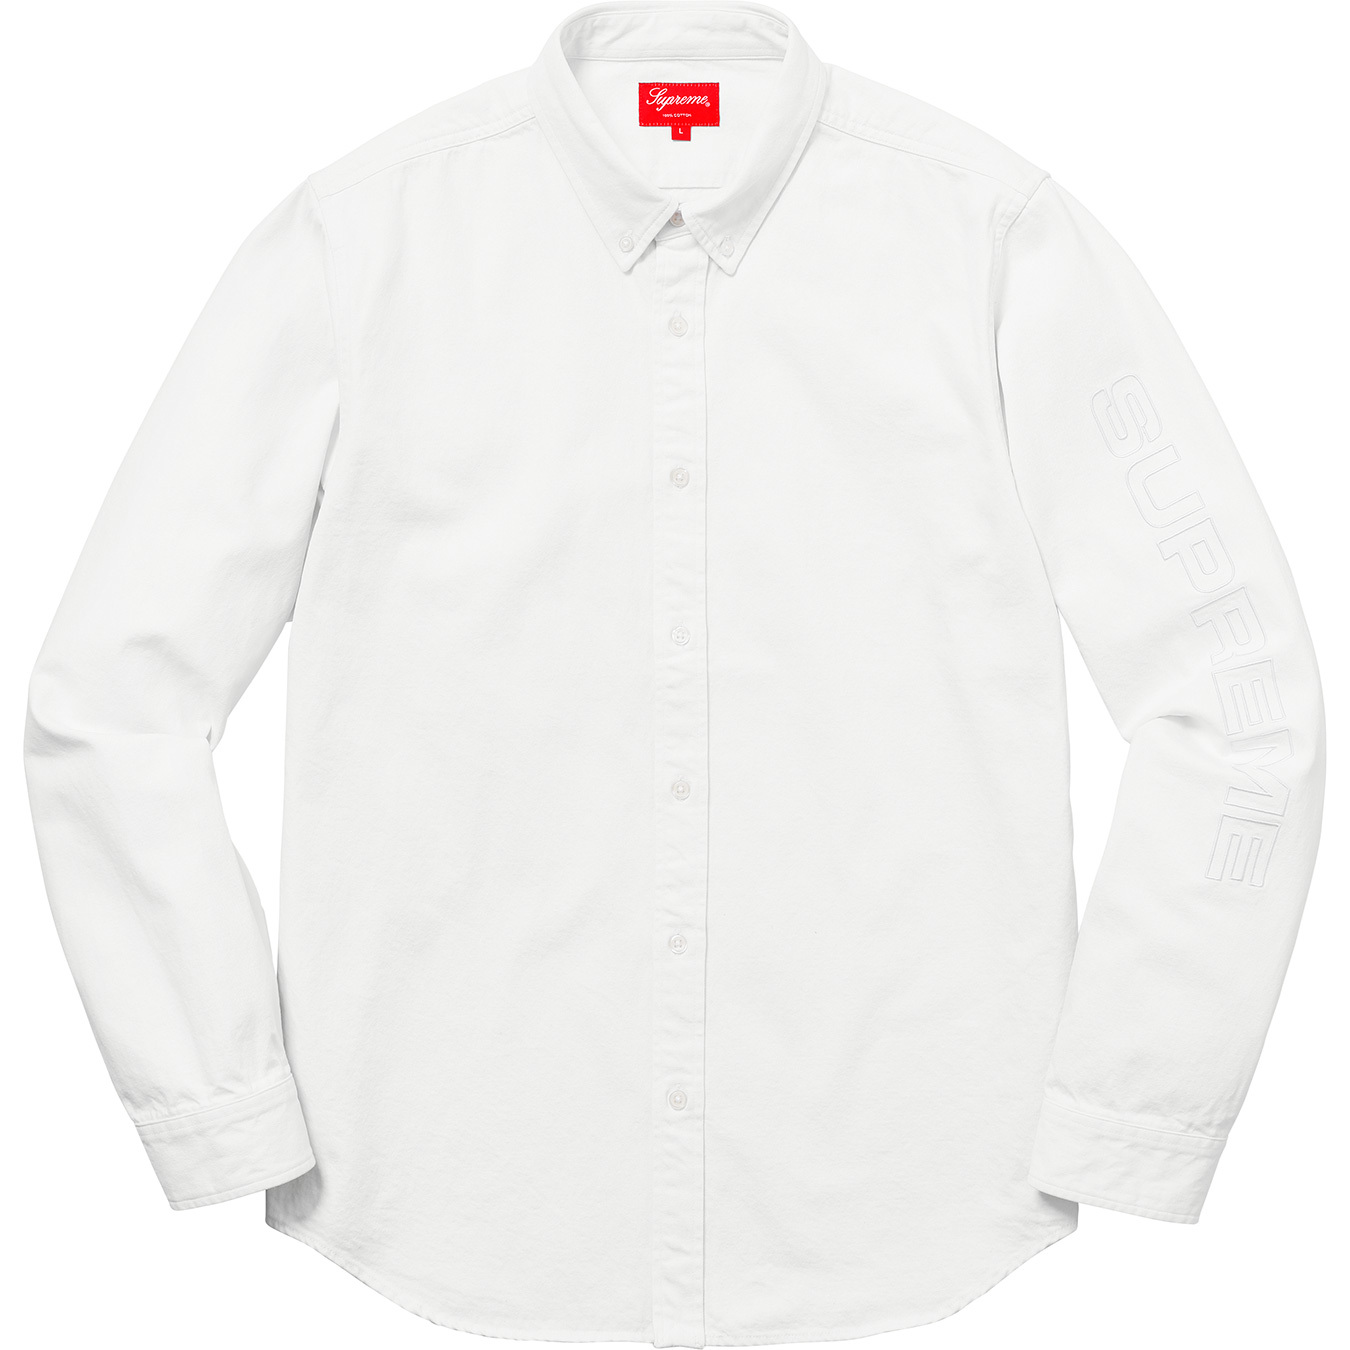 驚きの破格値supreme denim oxford shirts S 新品未使用 正規品 シャツ